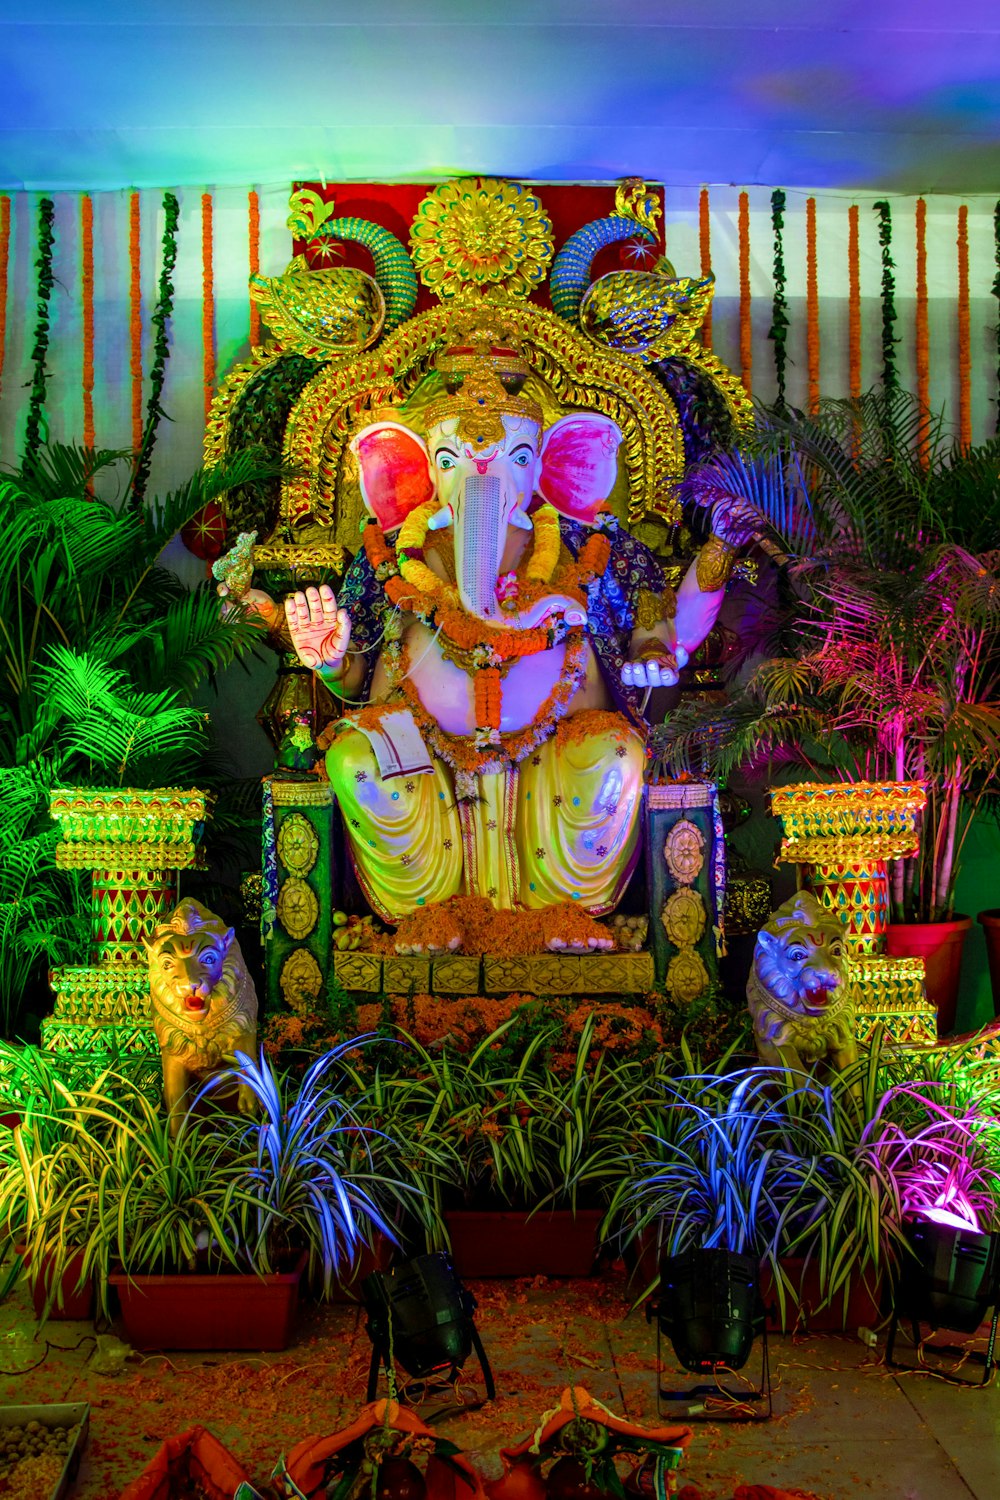 녹색 식물로 둘러싸인 힌두교 신 동상